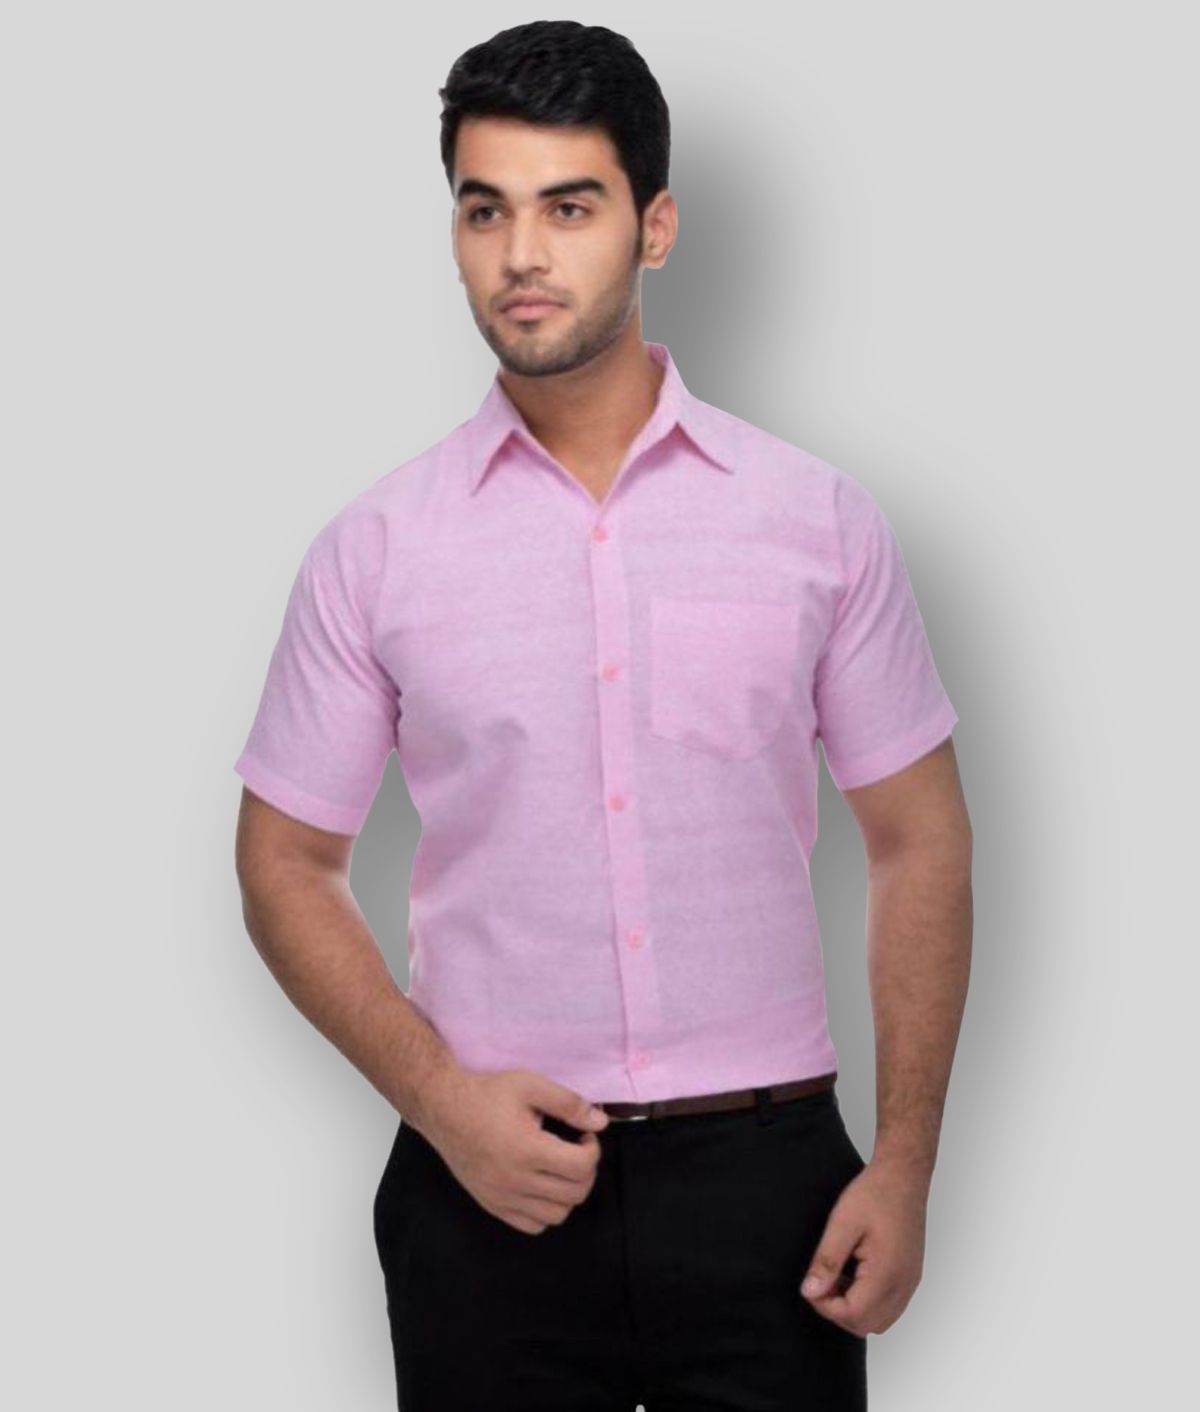     			DESHBANDHU DBK - Pink Cotton Regular Fit Men's Formal Shirt (Pack of 1)